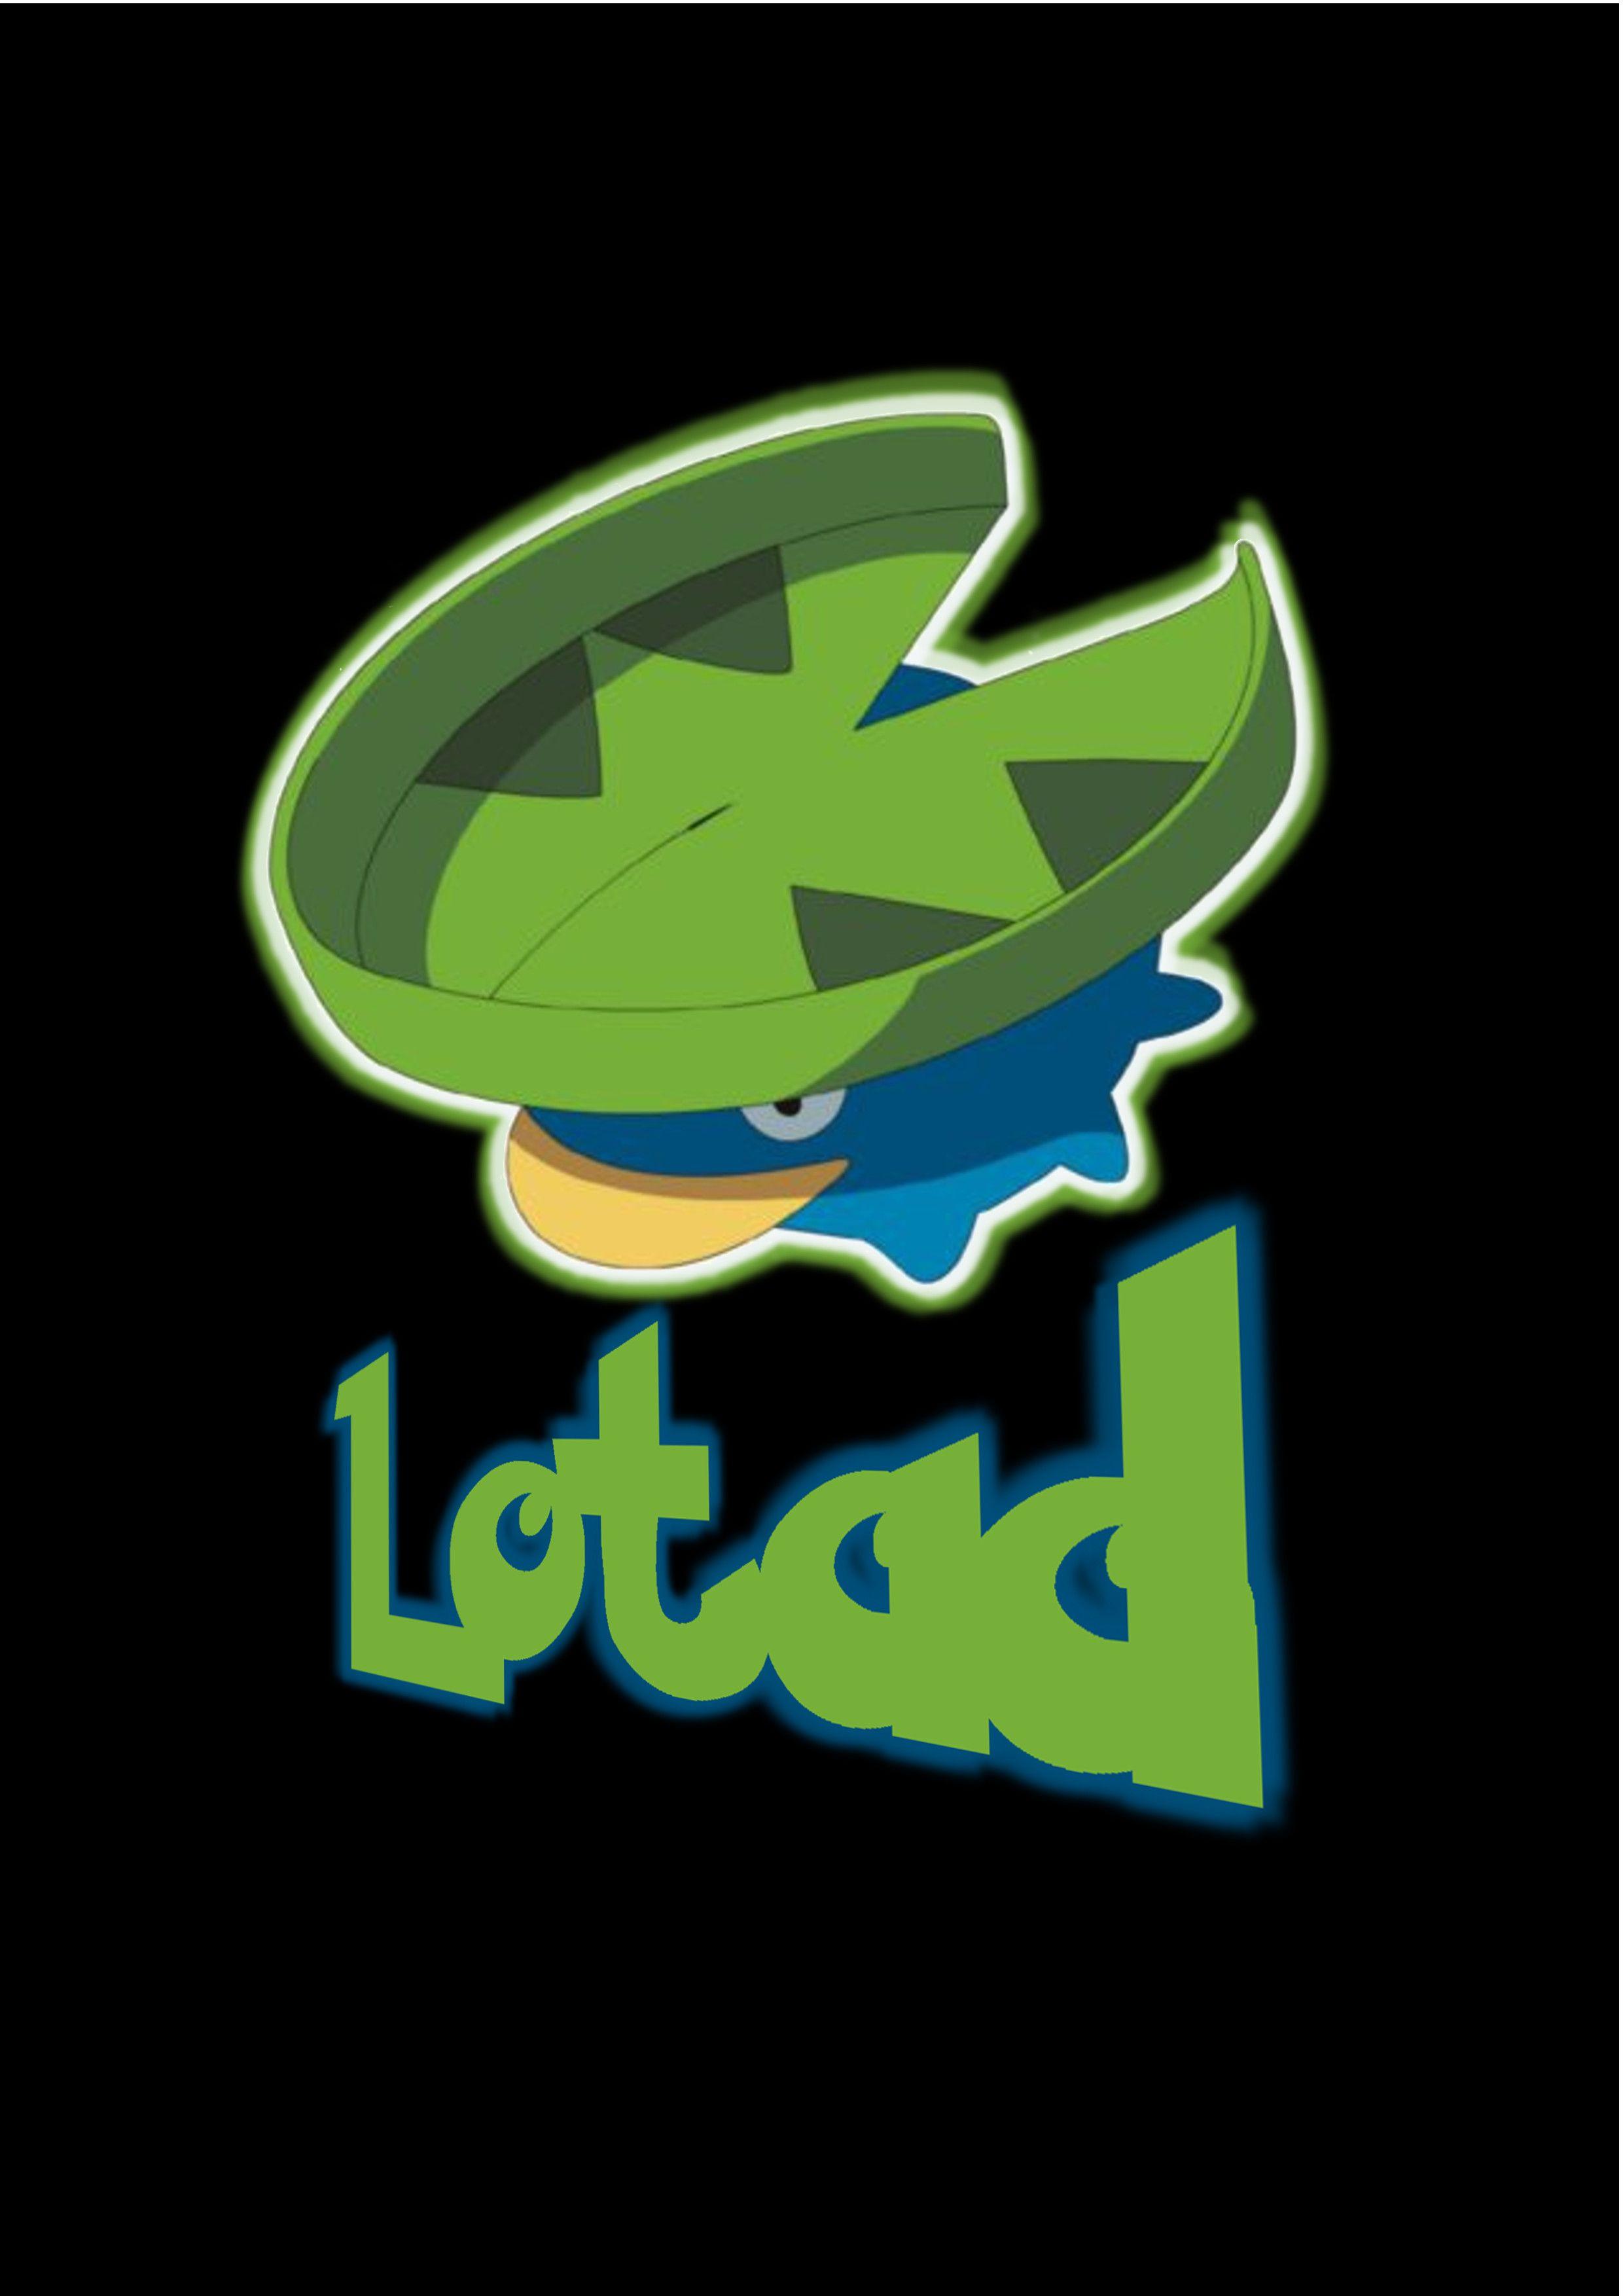 Lotad (T Shirt Idea)